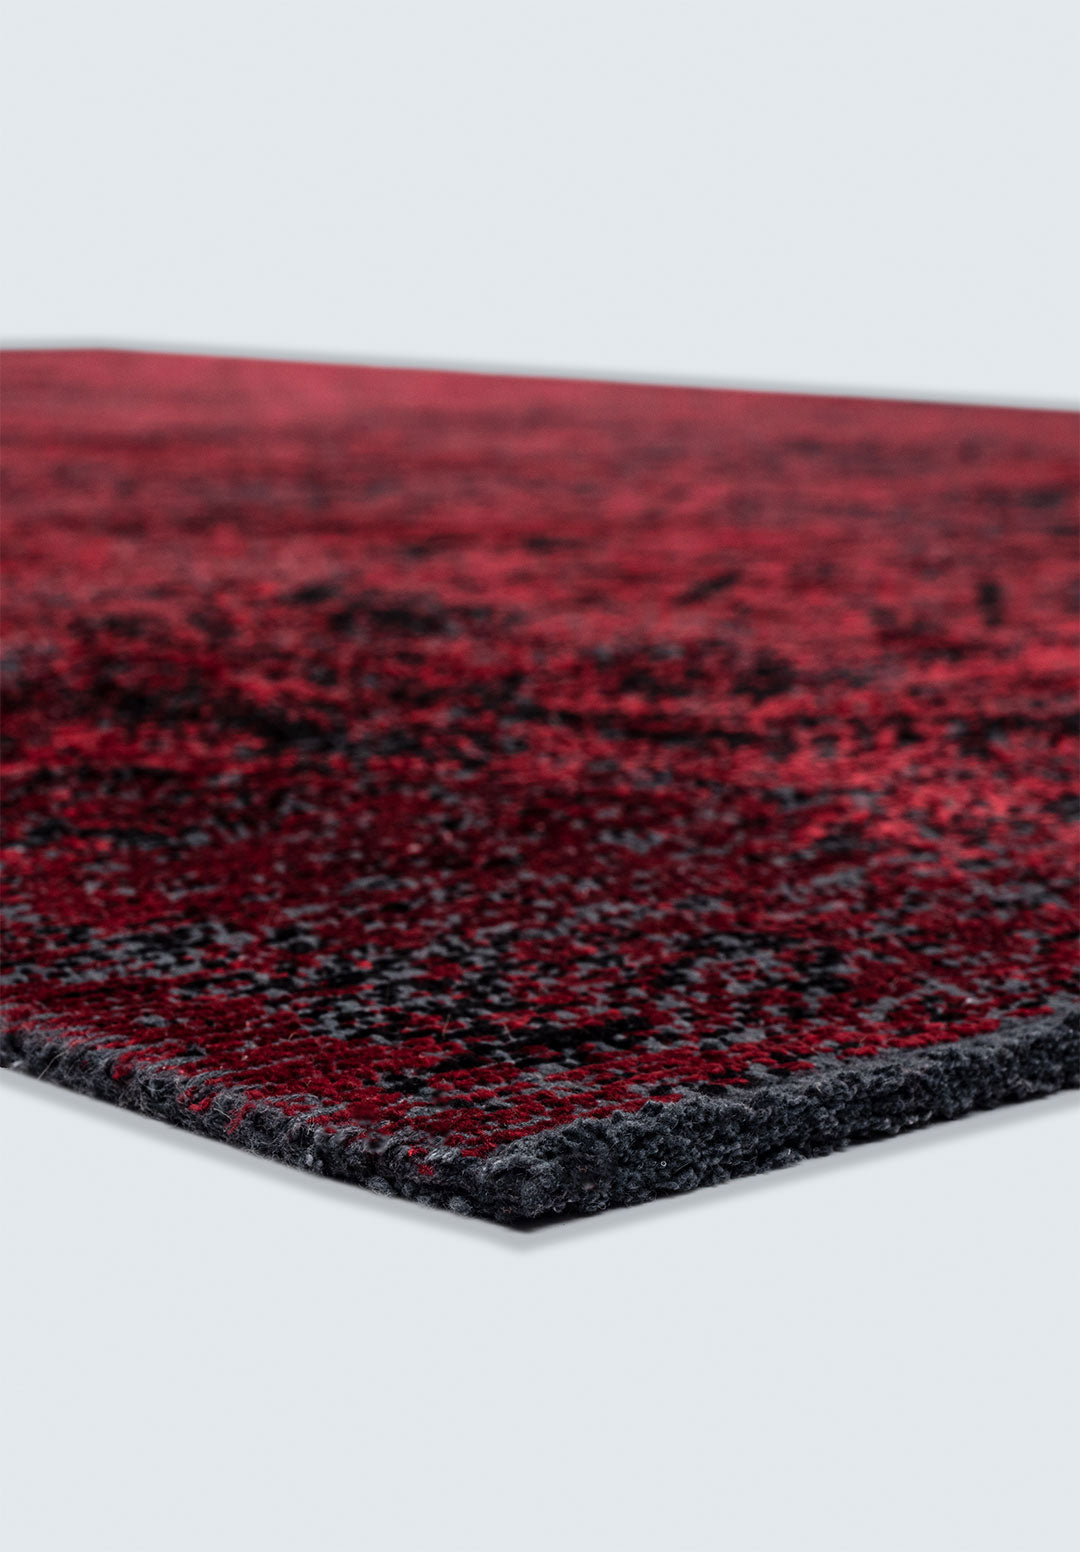 Tile Black - Red Rug Rugs - Venetto Design Venettodesign.com